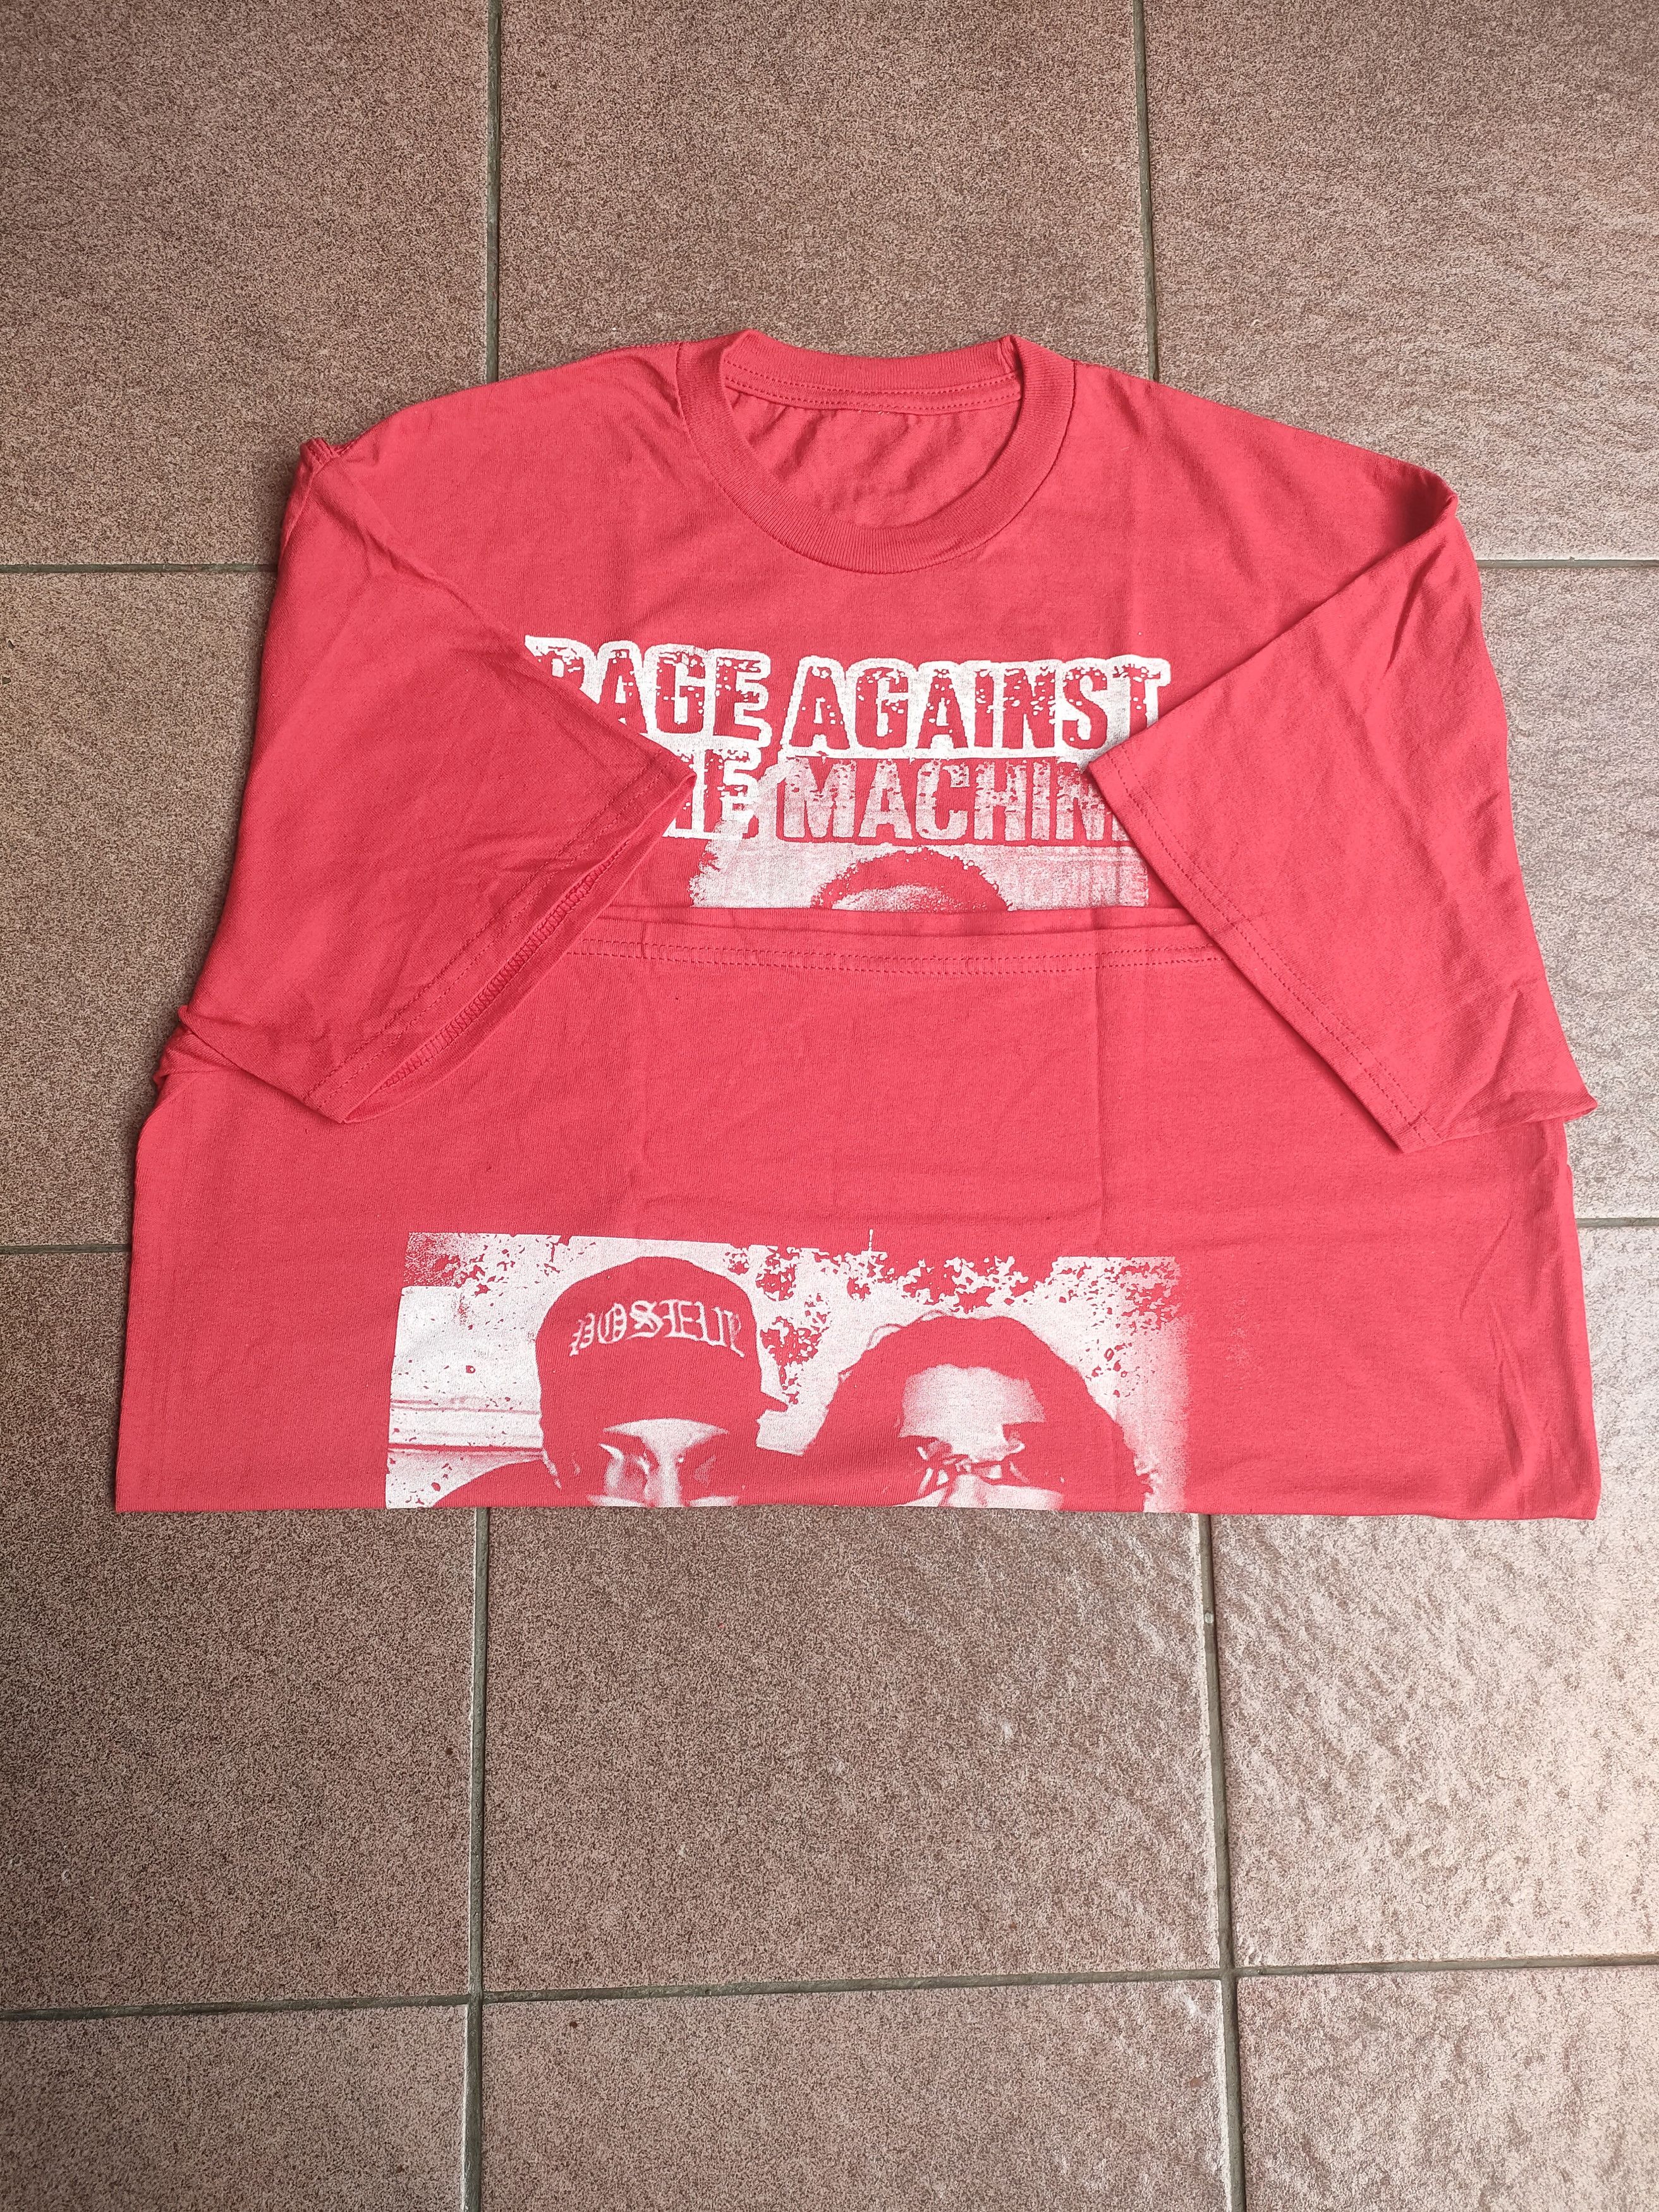 Vintage Rage Against The Machine - Vietnow - 5